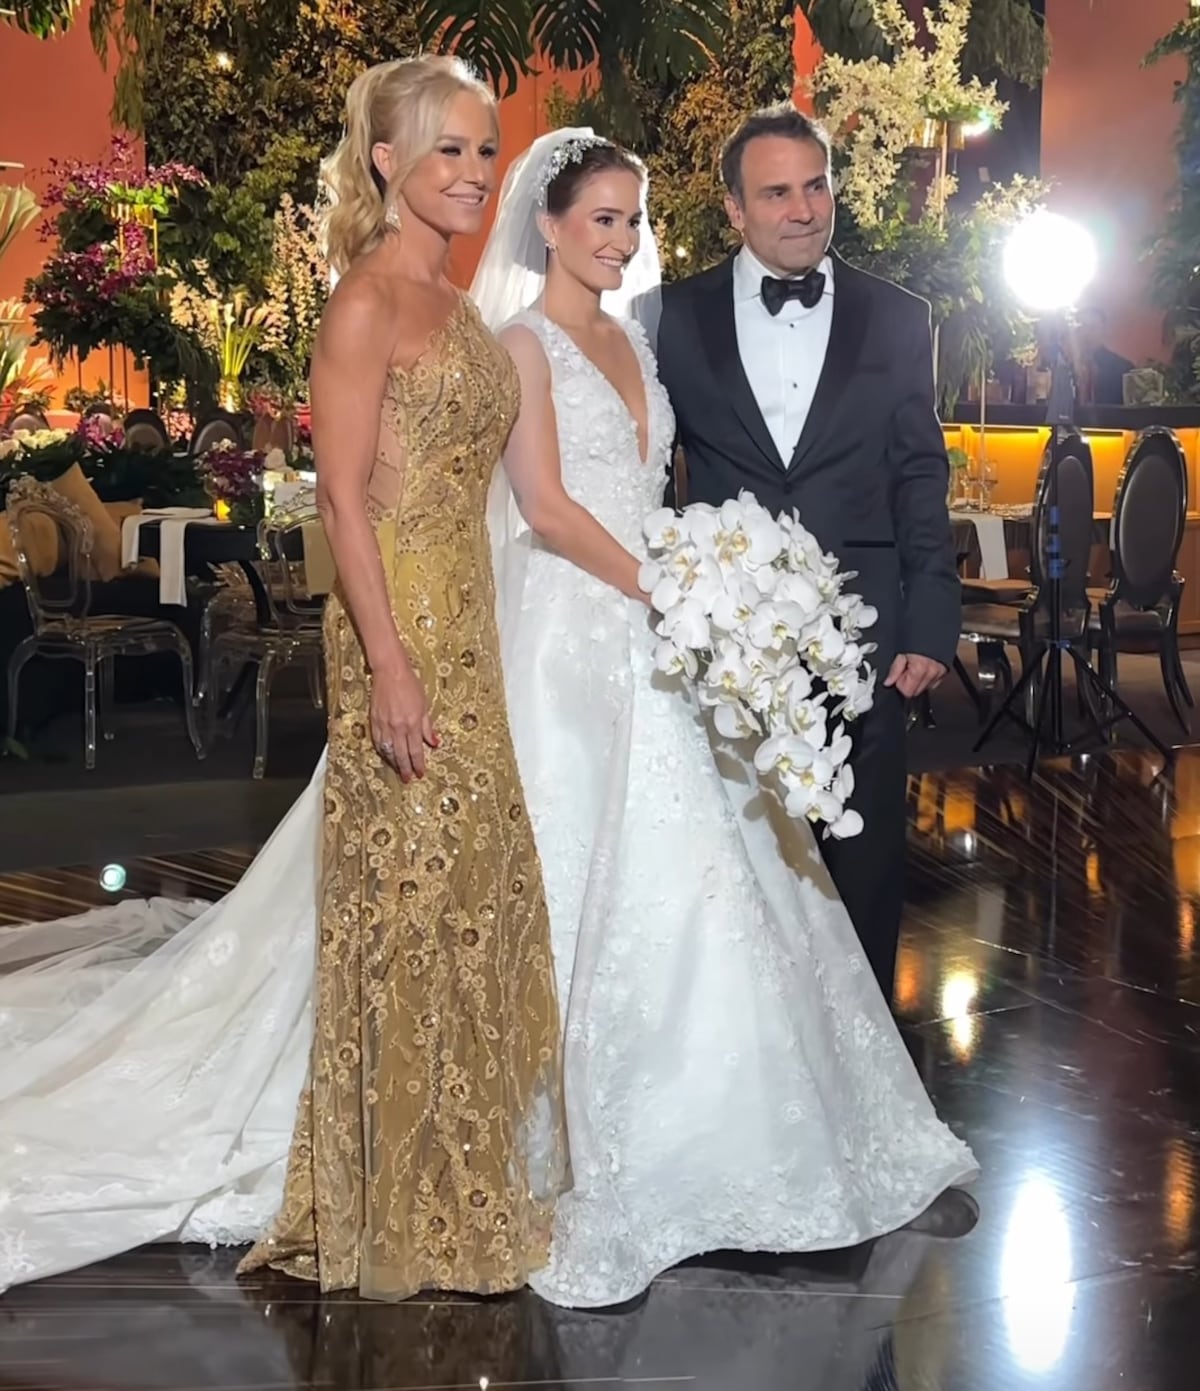 Fotos de la boda de la hija de la presentadora Karen Chalmers 